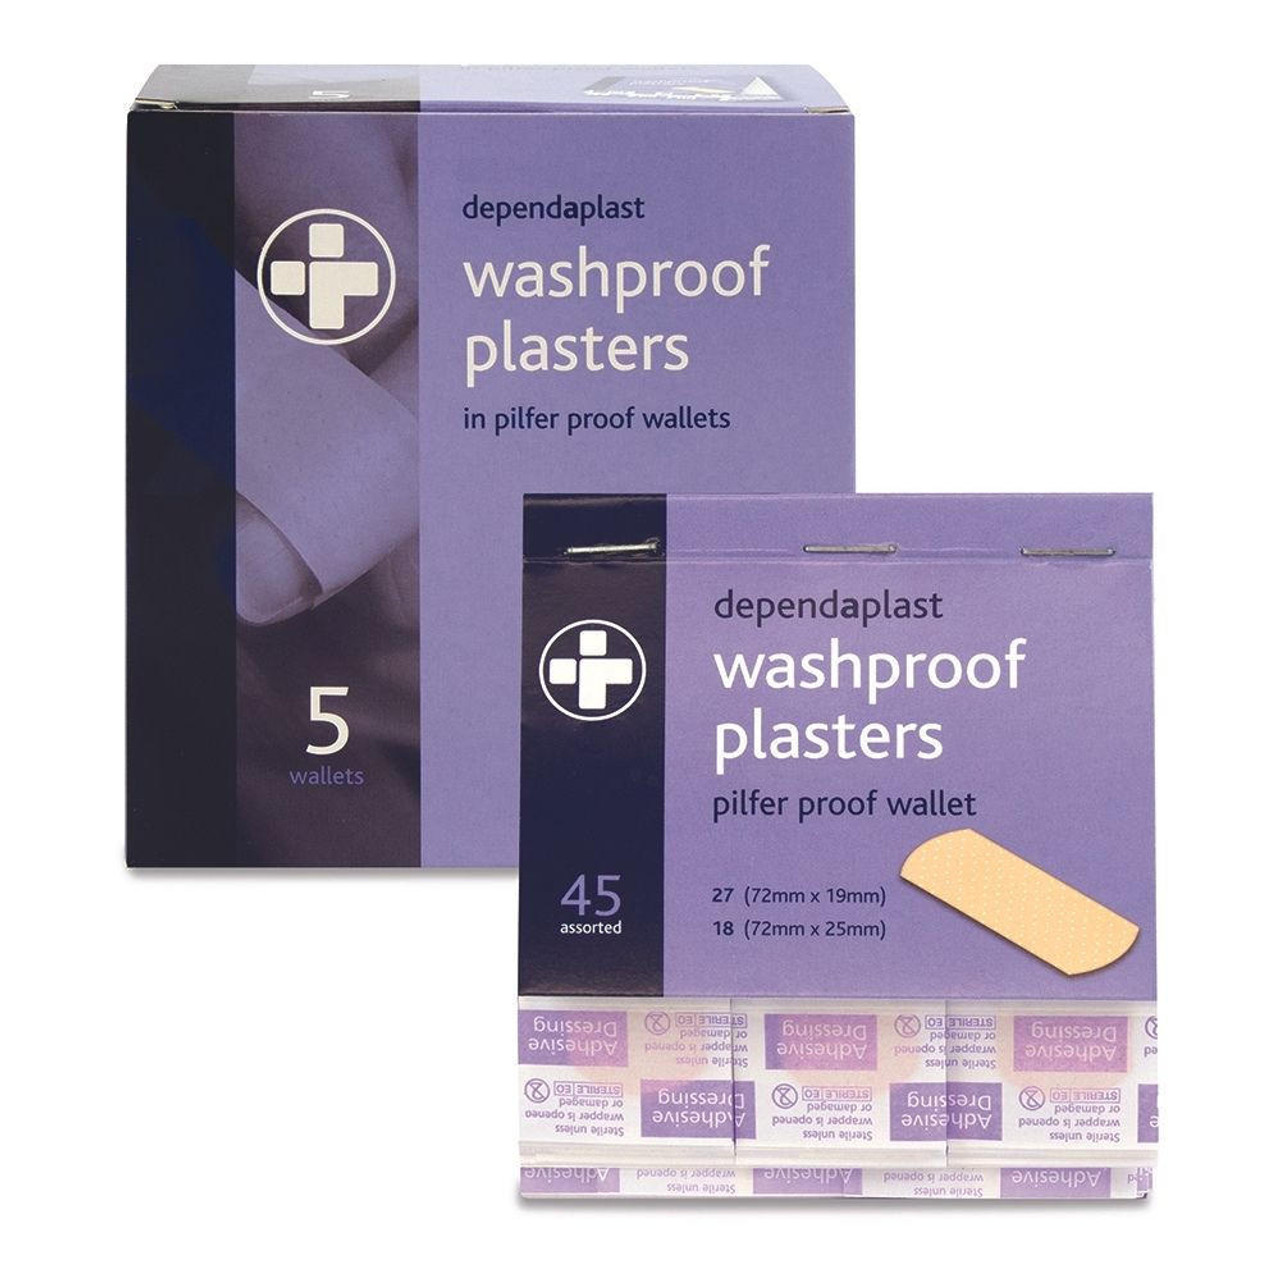 Dependaplast Washproof Plasters Box 5 Refill Packs of 45 for Pilfer Proof Dispenser